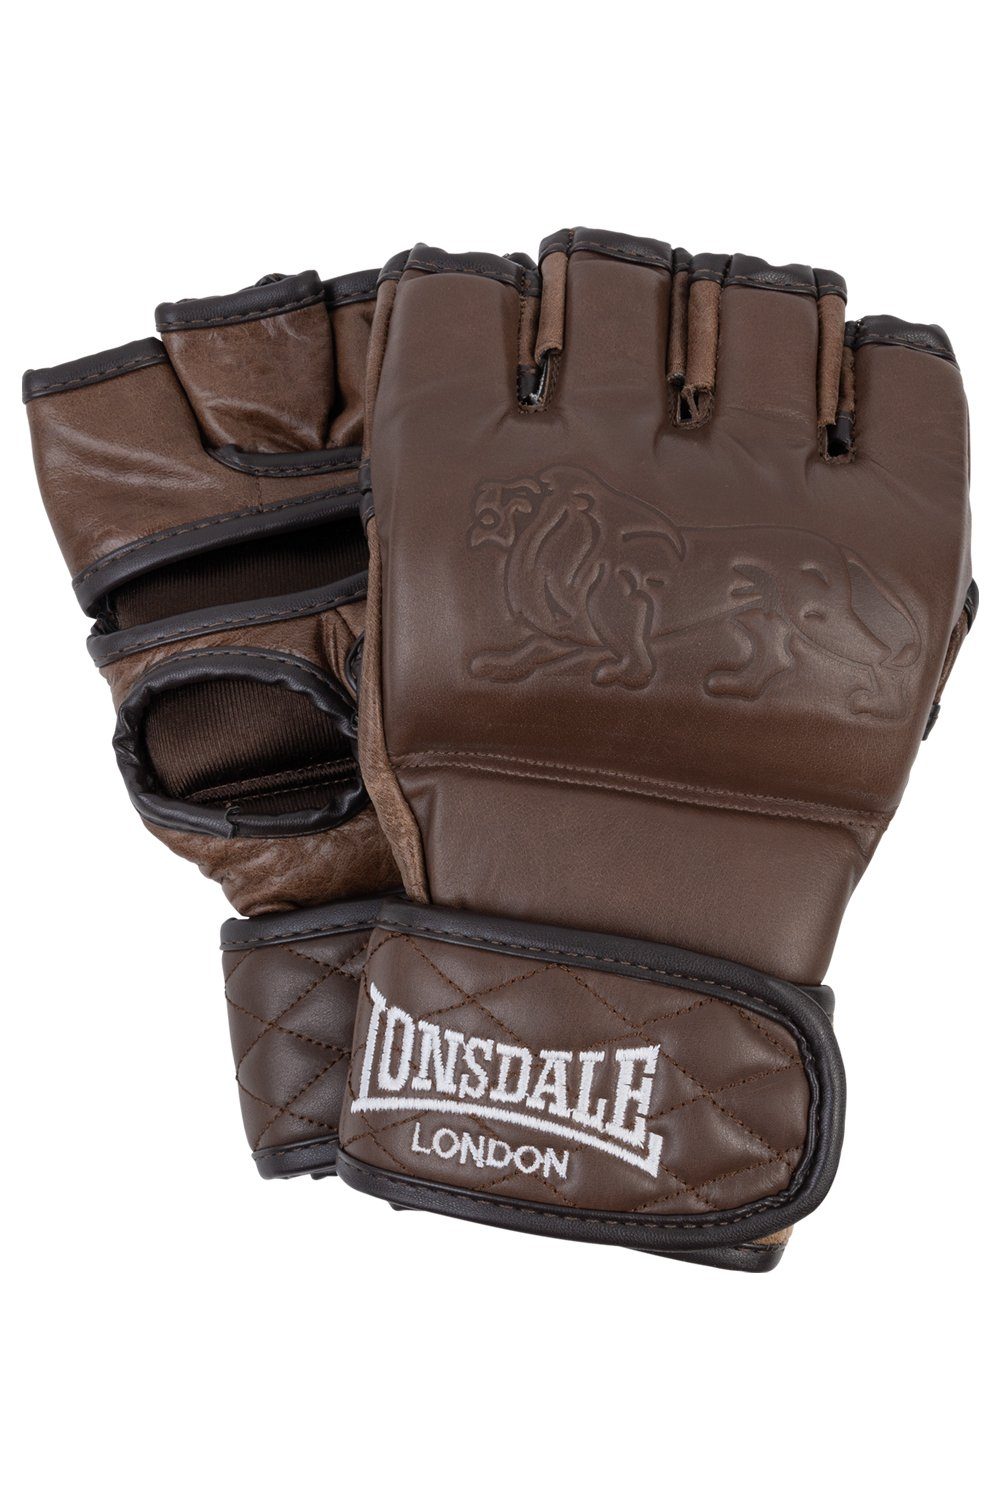 VINTAGE Lonsdale GLOVES MMA MMA-Handschuhe